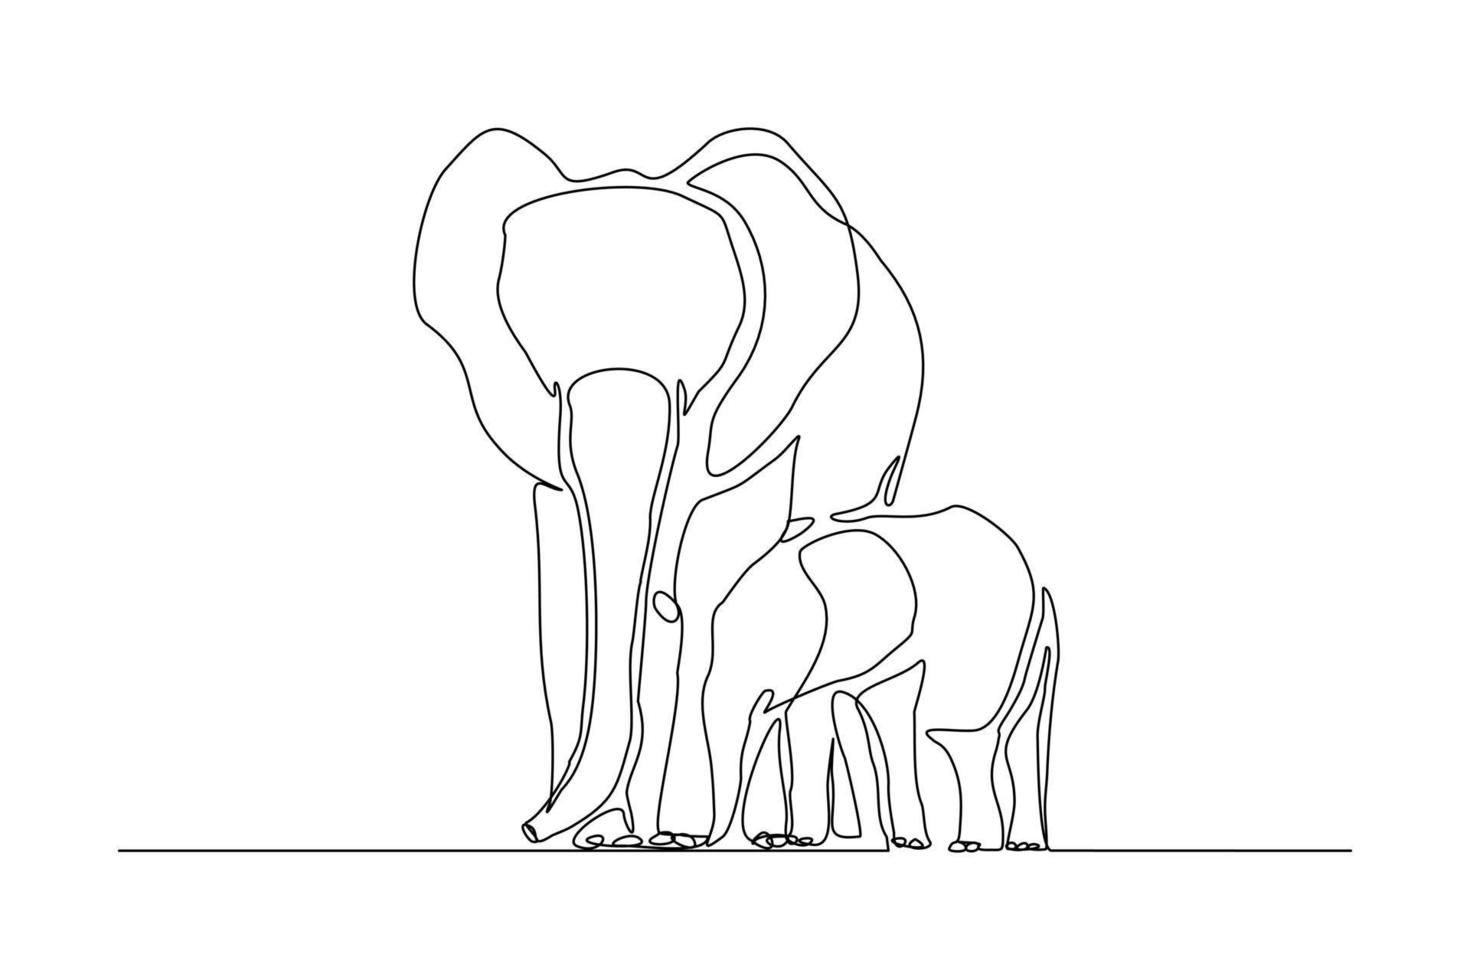 linha contínua de bebê elefante e mãe. única linha arte pai elefante e ilustração vetorial de crianças vetor